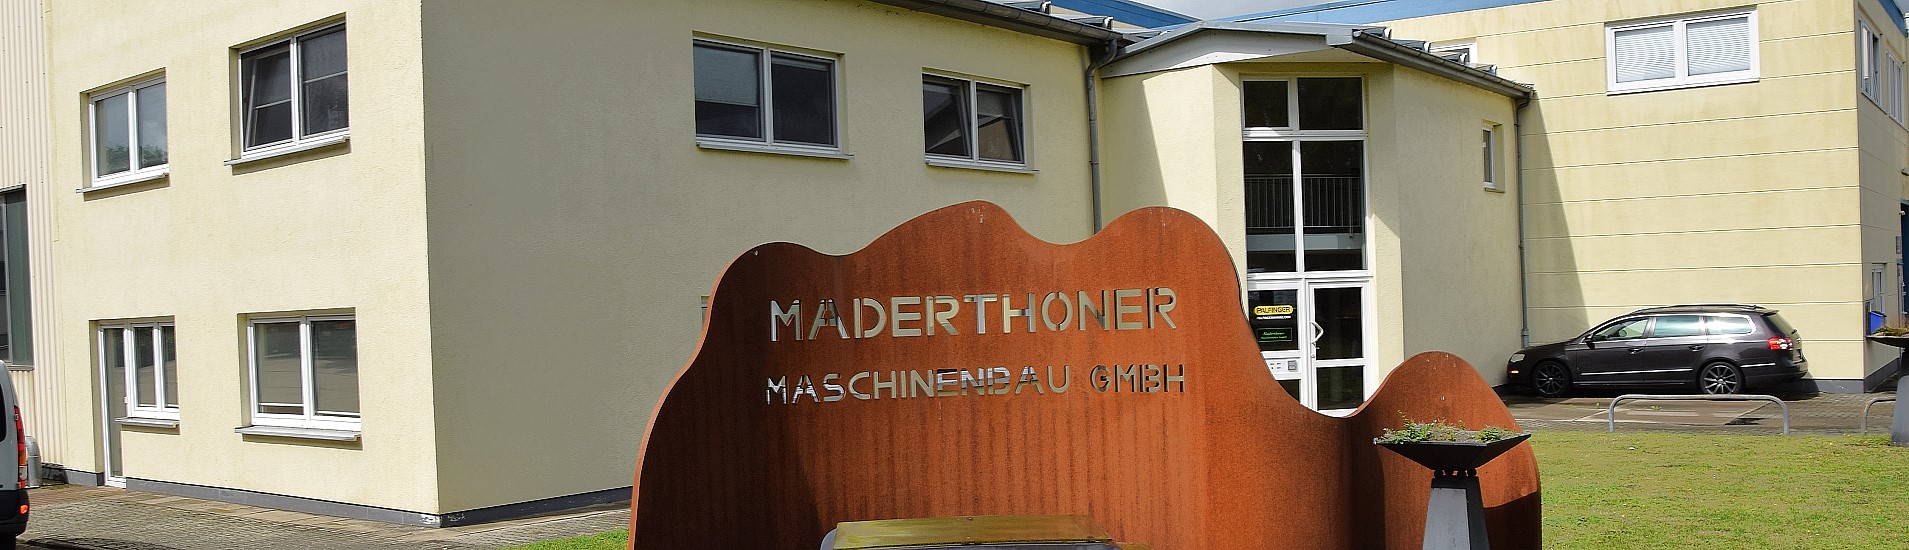 Maderthoner Maschinenbau - UNTERNEHMEN